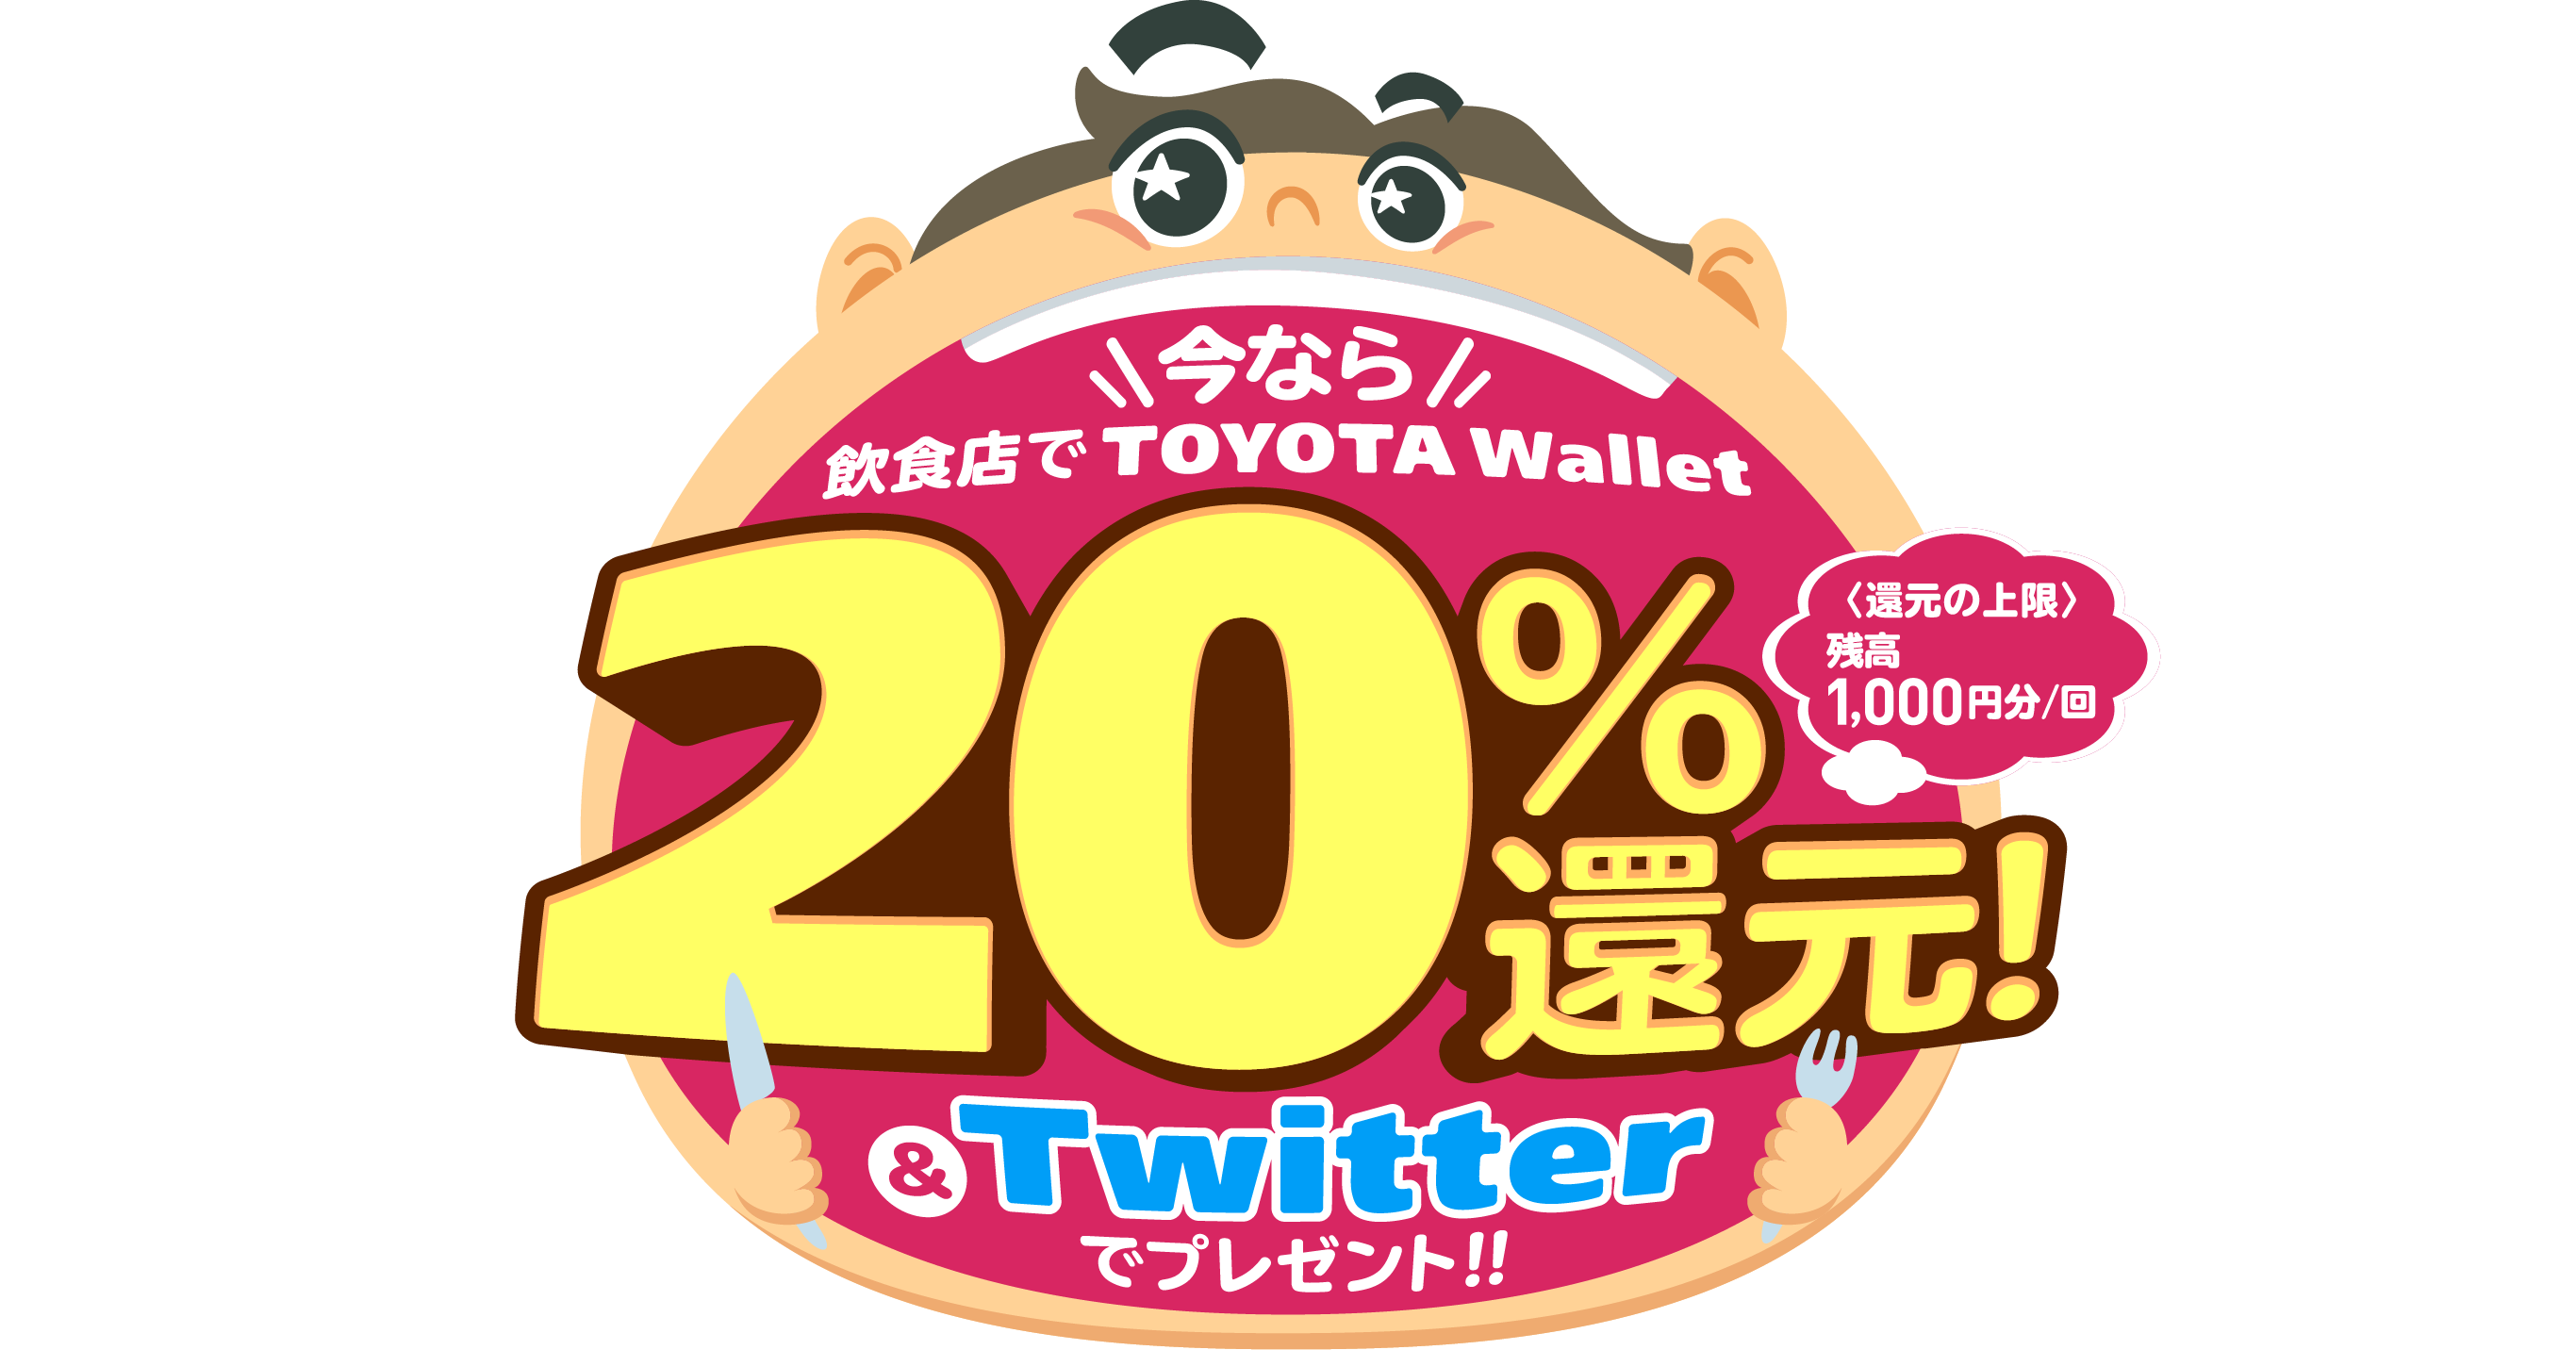 今なら飲食店でTOYOTA Wallet 20%還元！&Twitterでプレゼント！！〈還元の上限〉残高1,000円分/回